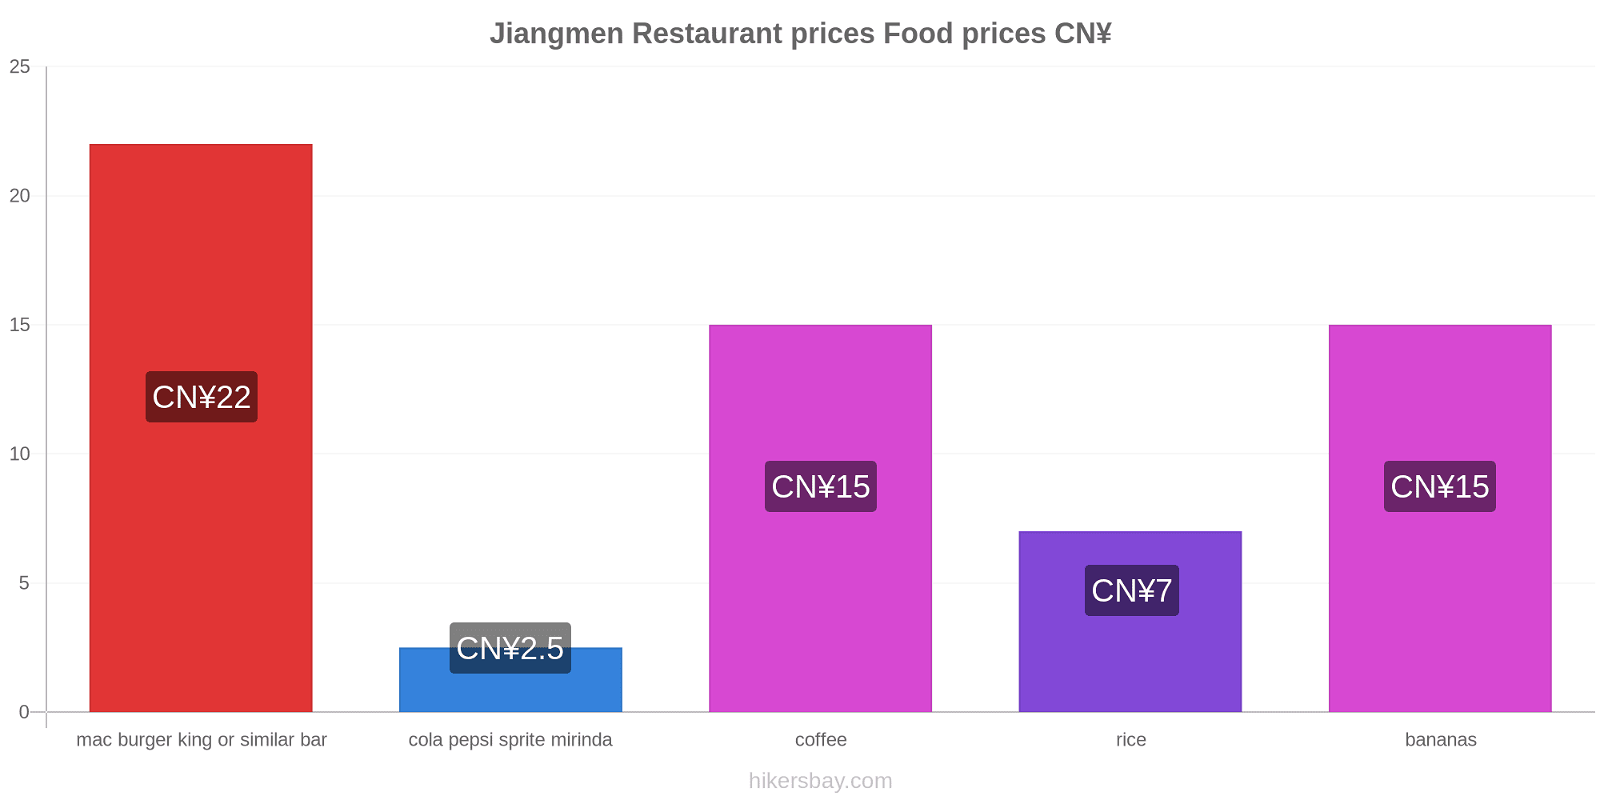 Jiangmen price changes hikersbay.com